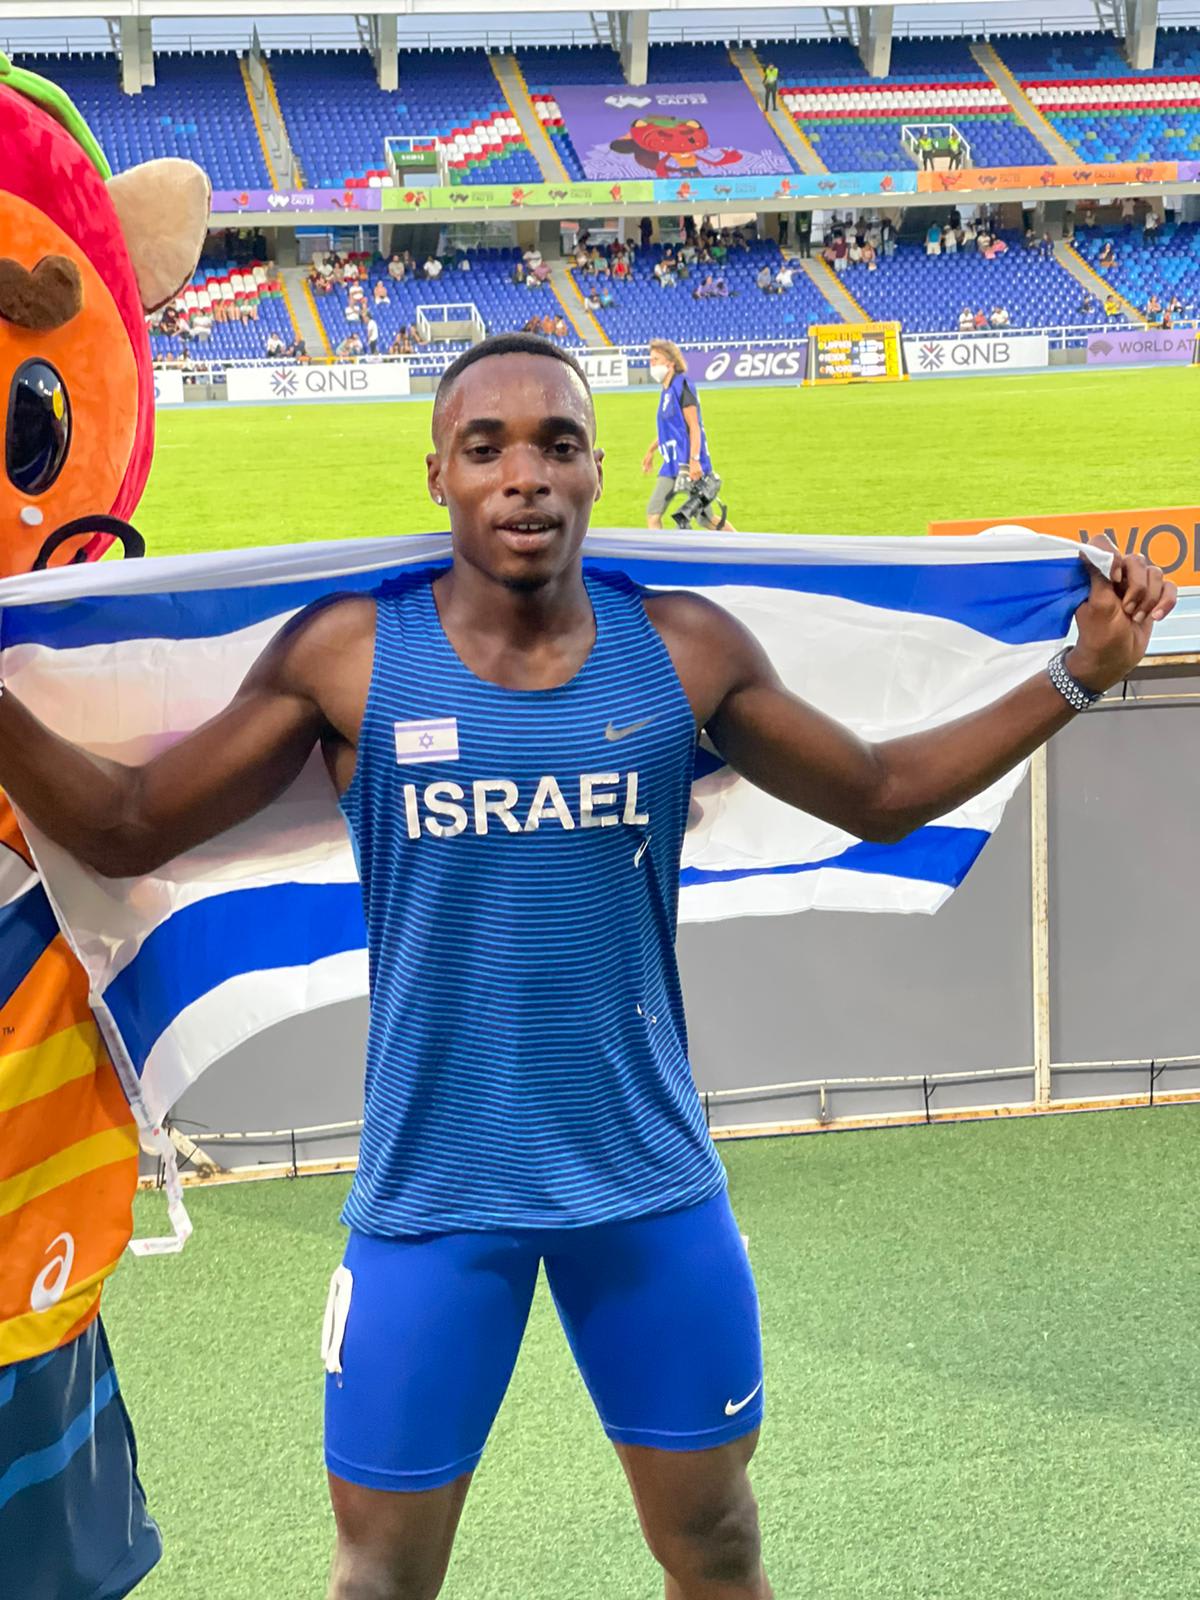 האצן הישראלי בלסינג אפריפה אחרי שניפץ את שיא התחרות בגמר ריצת ה-200 מטר עד גיל 20